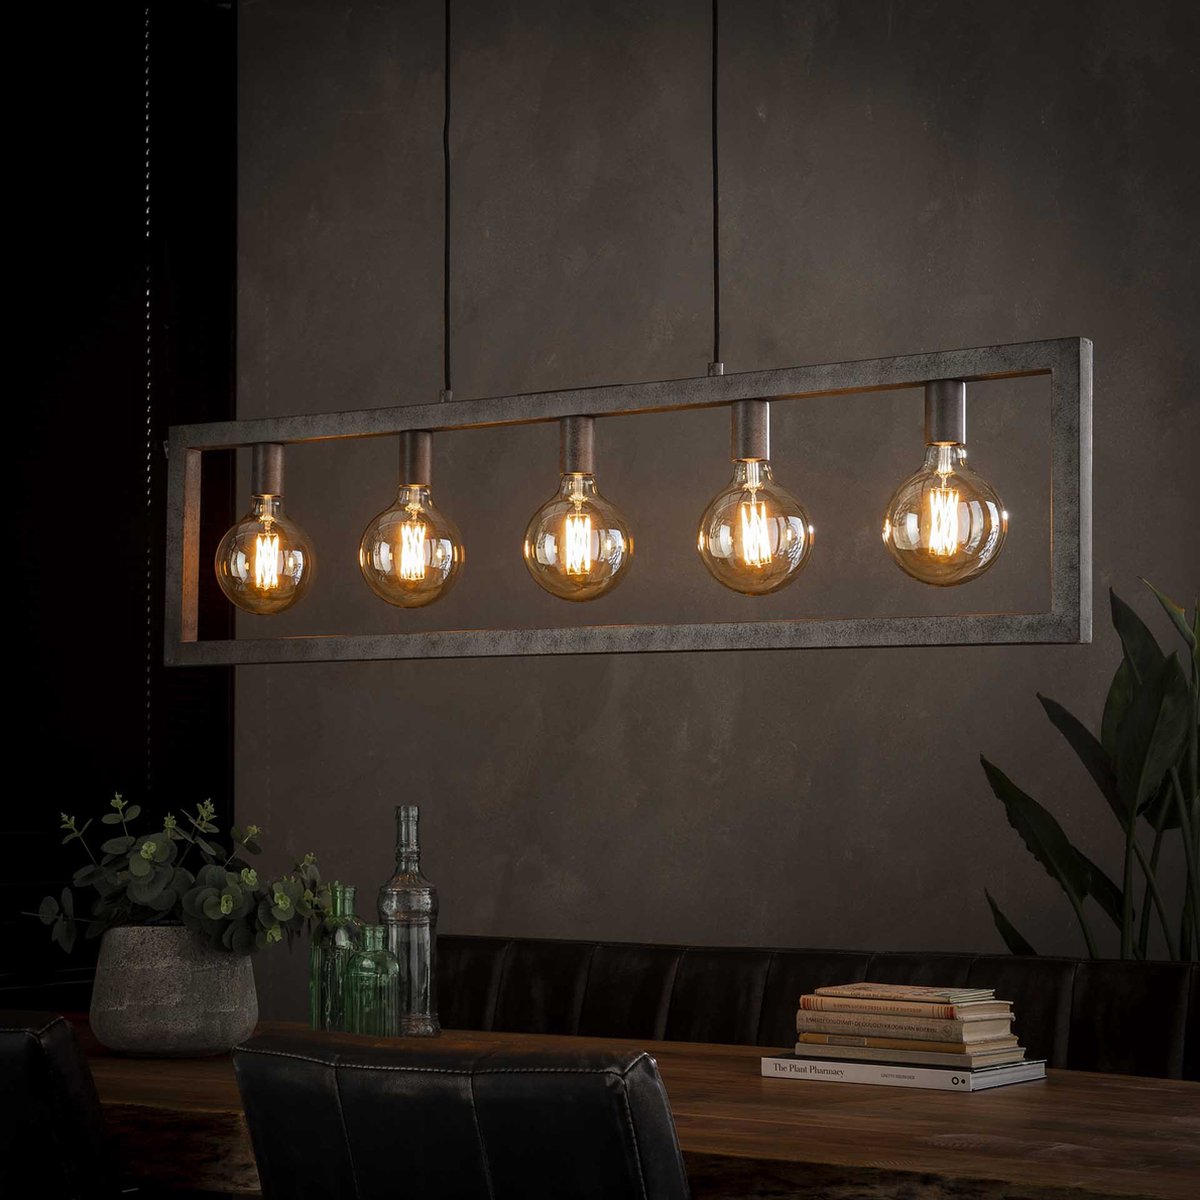 Hanglamp Steps | 5 lichts | oud zilver | metaal | in hoogte verstelbaar tot 150 cm | 120 cm breed | eetkamer / eettafel lamp | modern / sfeervol design